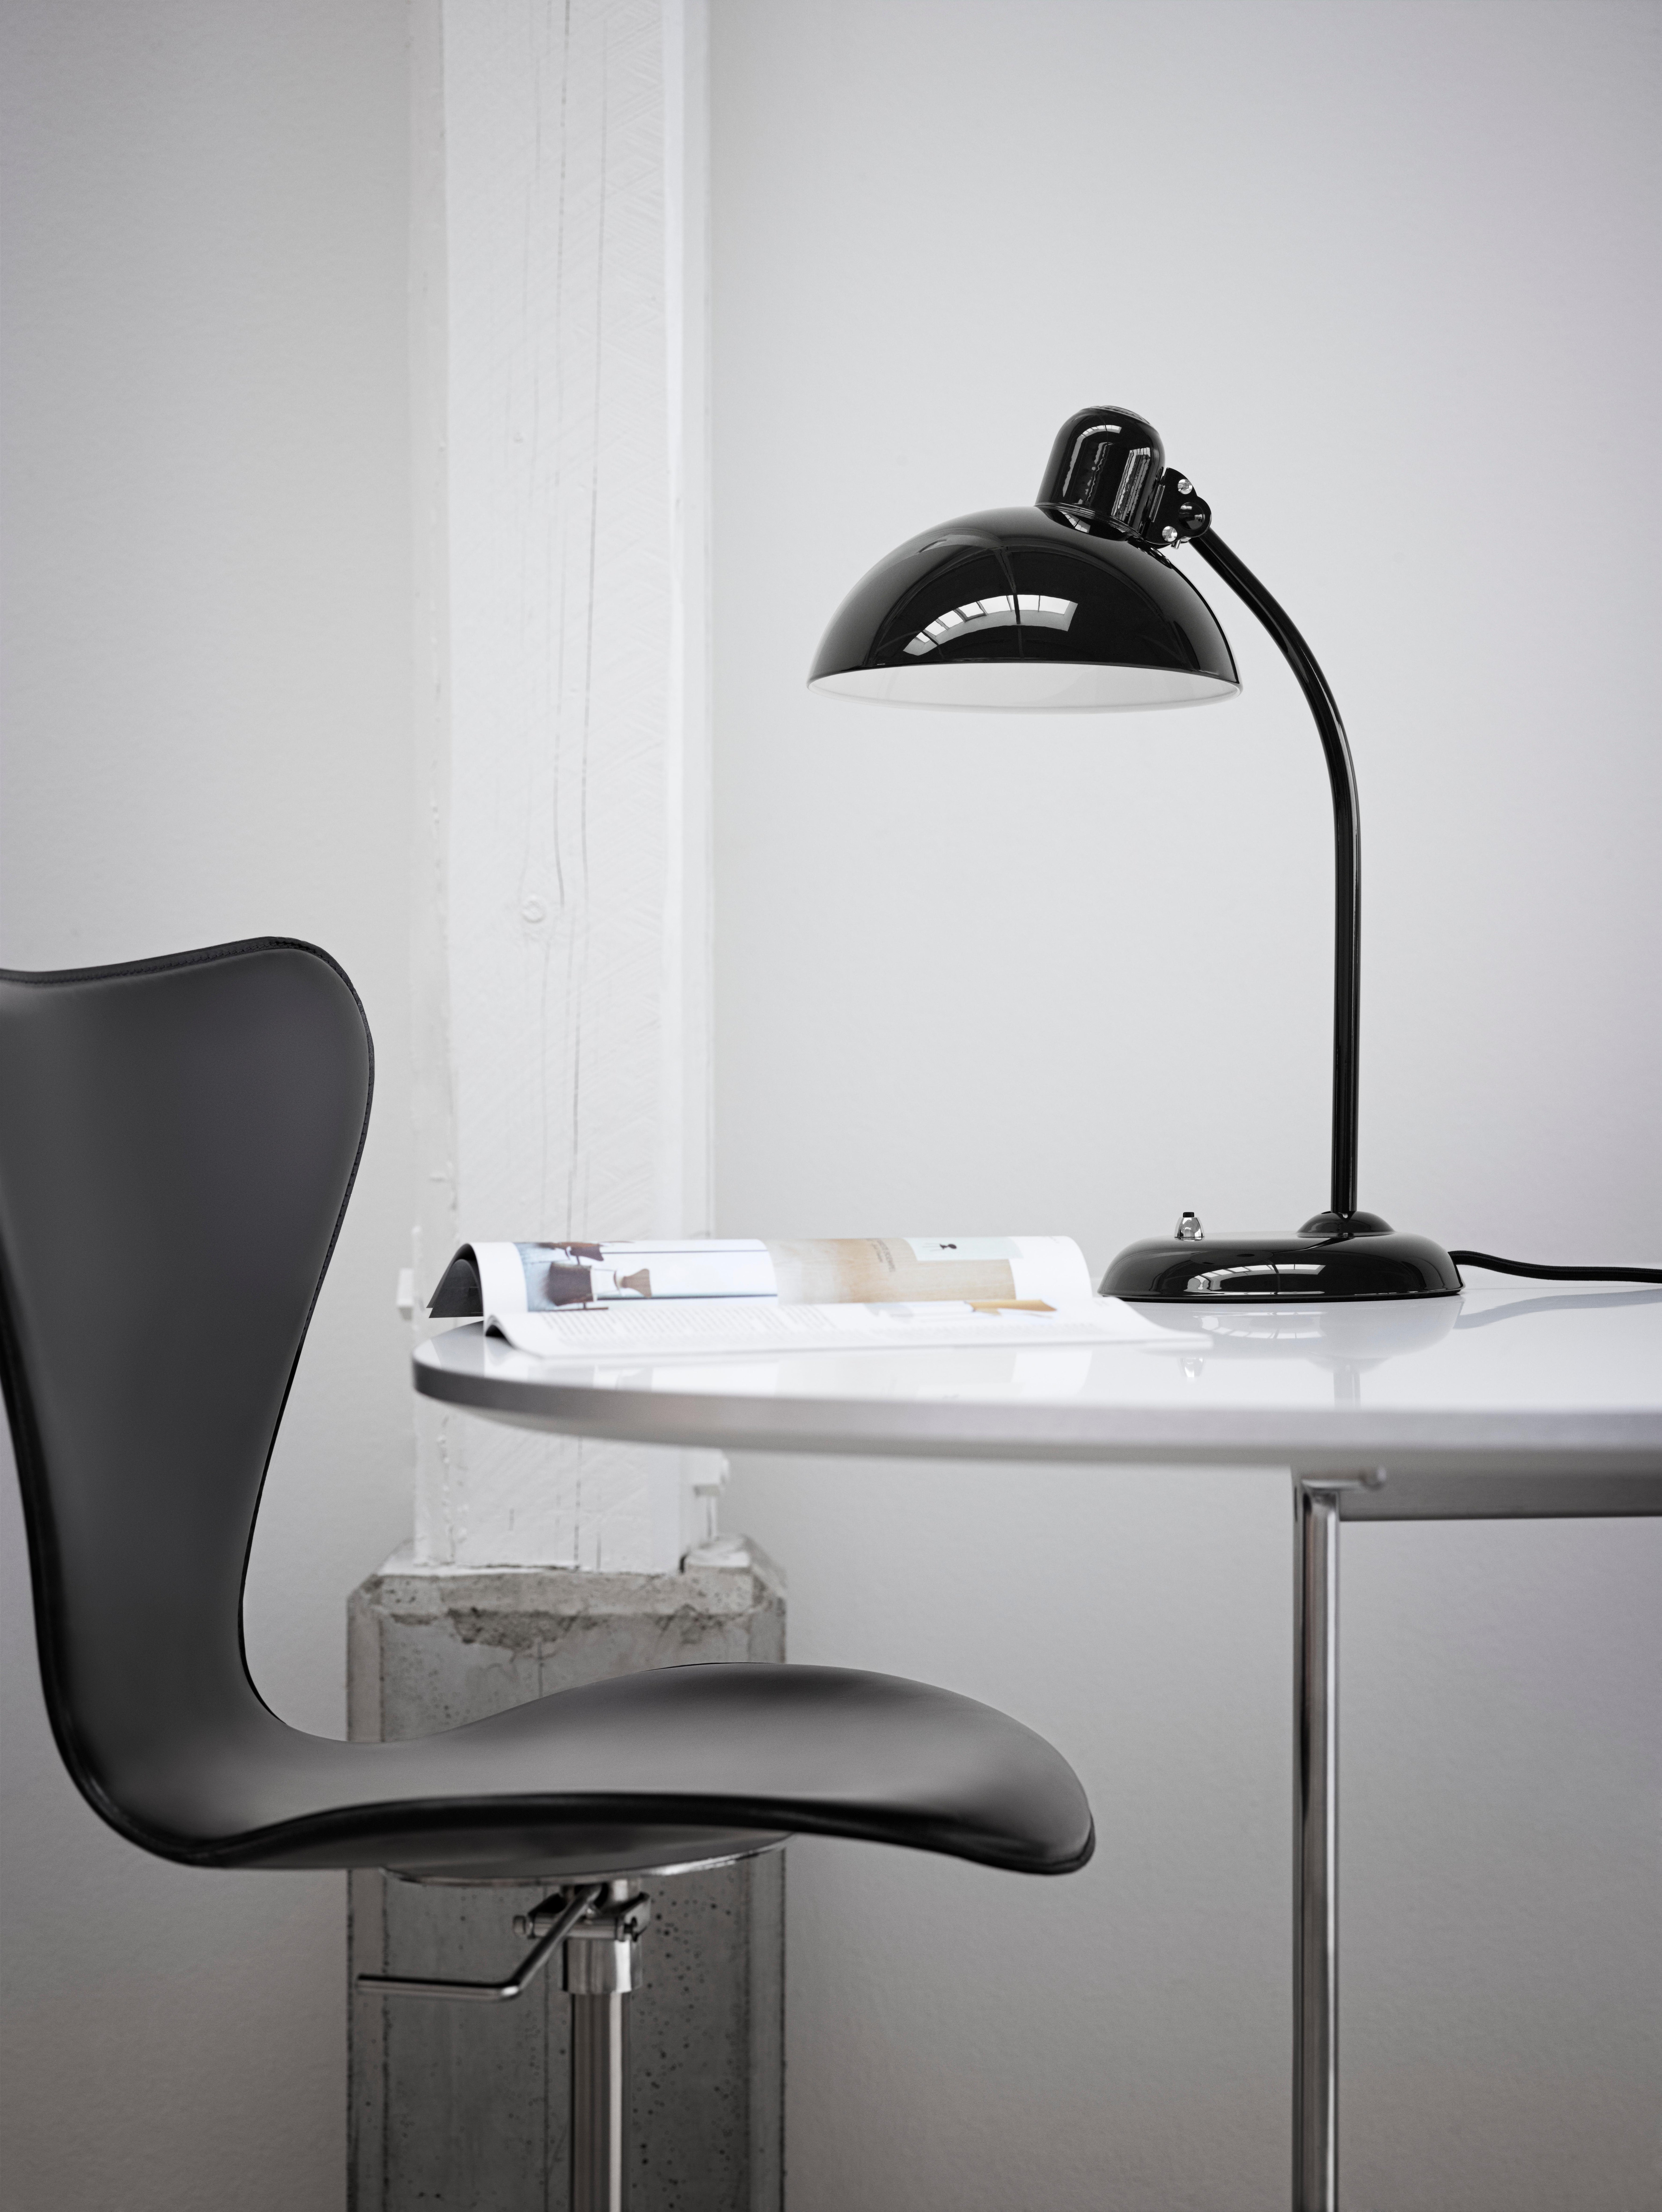 Lampe de table 'Kaiser Idell 6556-T' de Christian Dell pour Fritz Hansen en noir brillant.

 Fondée en 1872, la société Fritz Hansen est devenue synonyme de design danois légendaire. Alliant un savoir-faire intemporel à un souci de durabilité, les